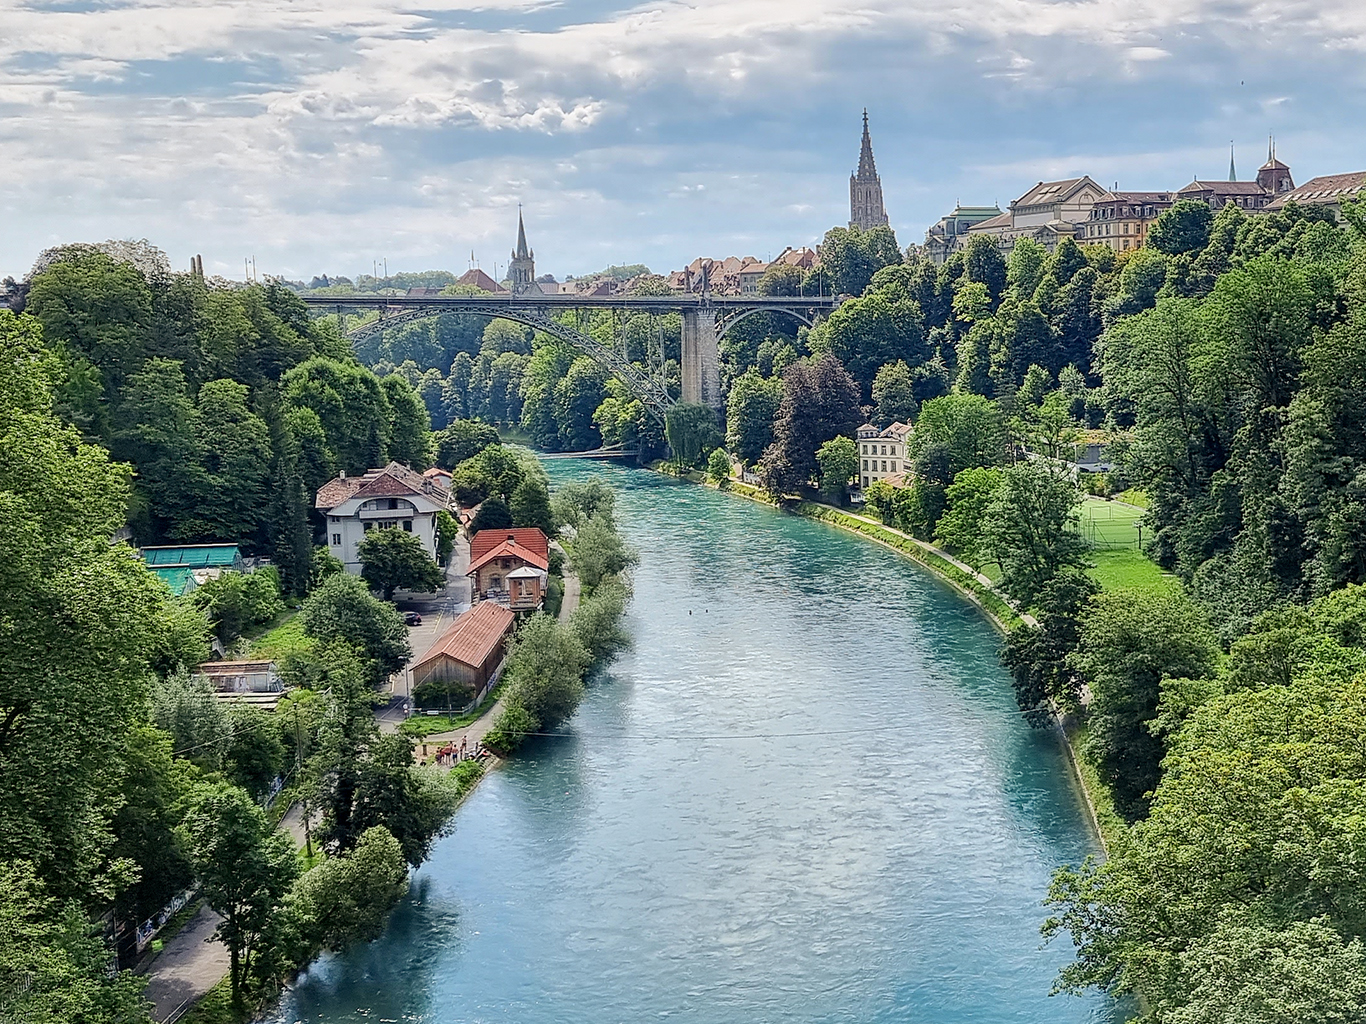 Řeka Aare protéká starým městem Bernu a vytváří dlouhý zákrut